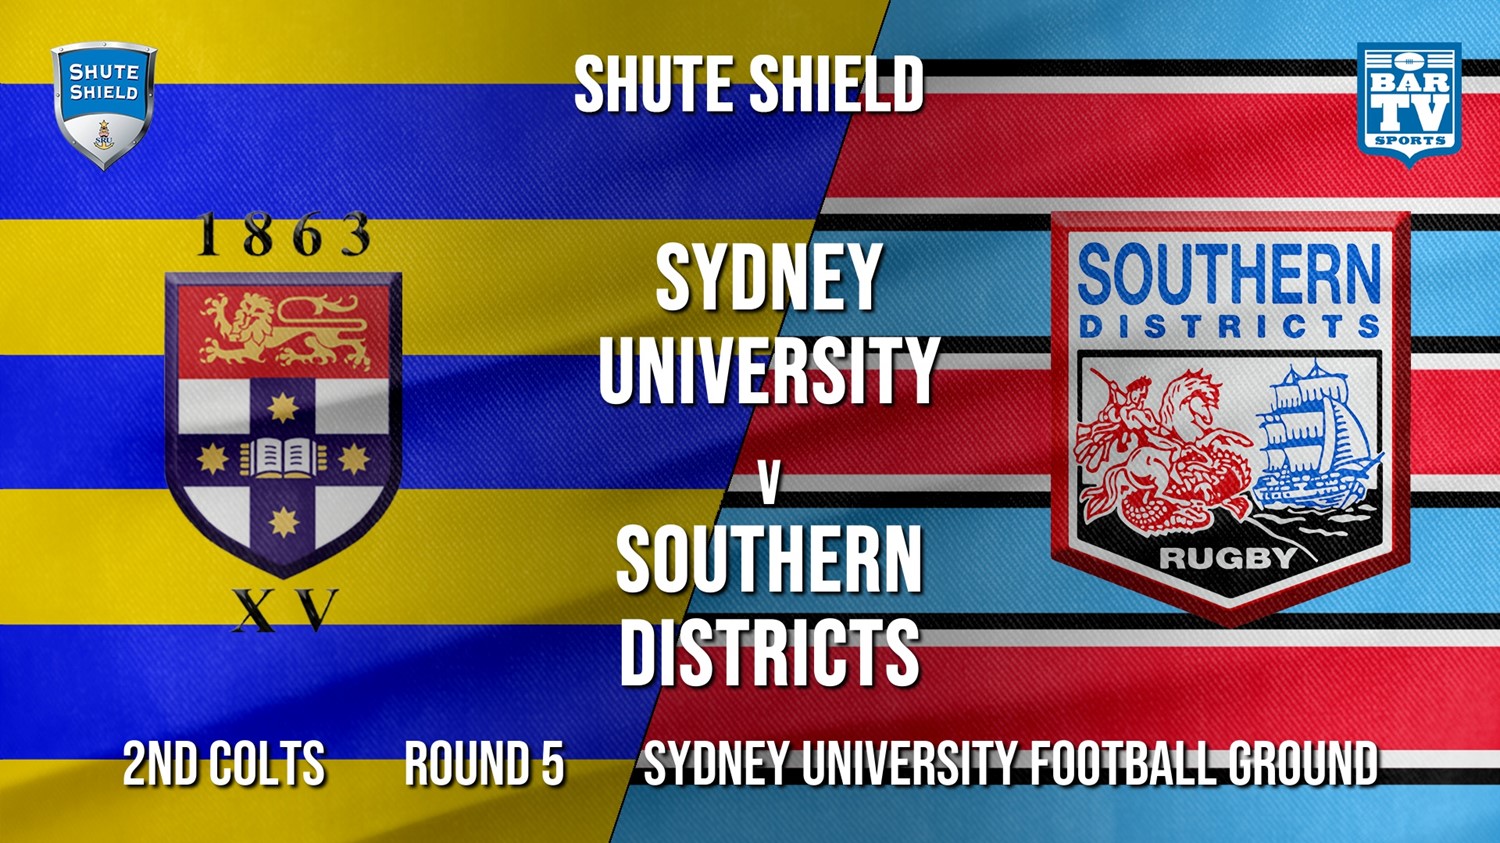 Shute Shield Round 5 - 2nd Colts - Sydney University v Southern Districts Minigame Slate Image